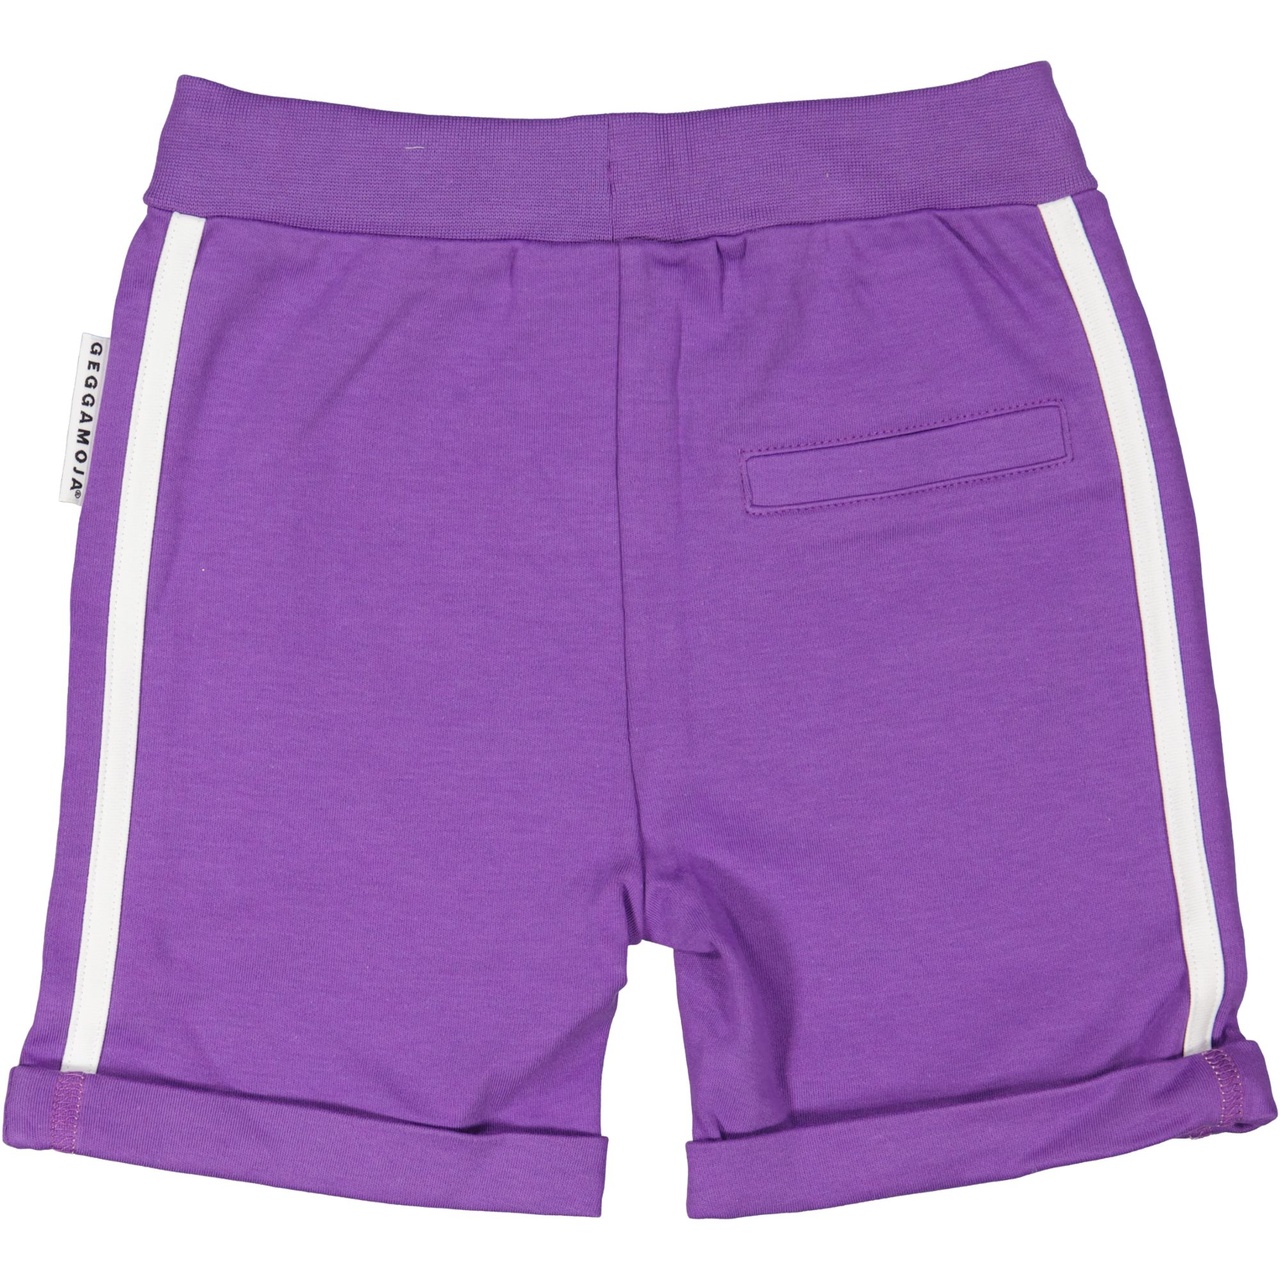 Sweat shorts Purple 05 134/140